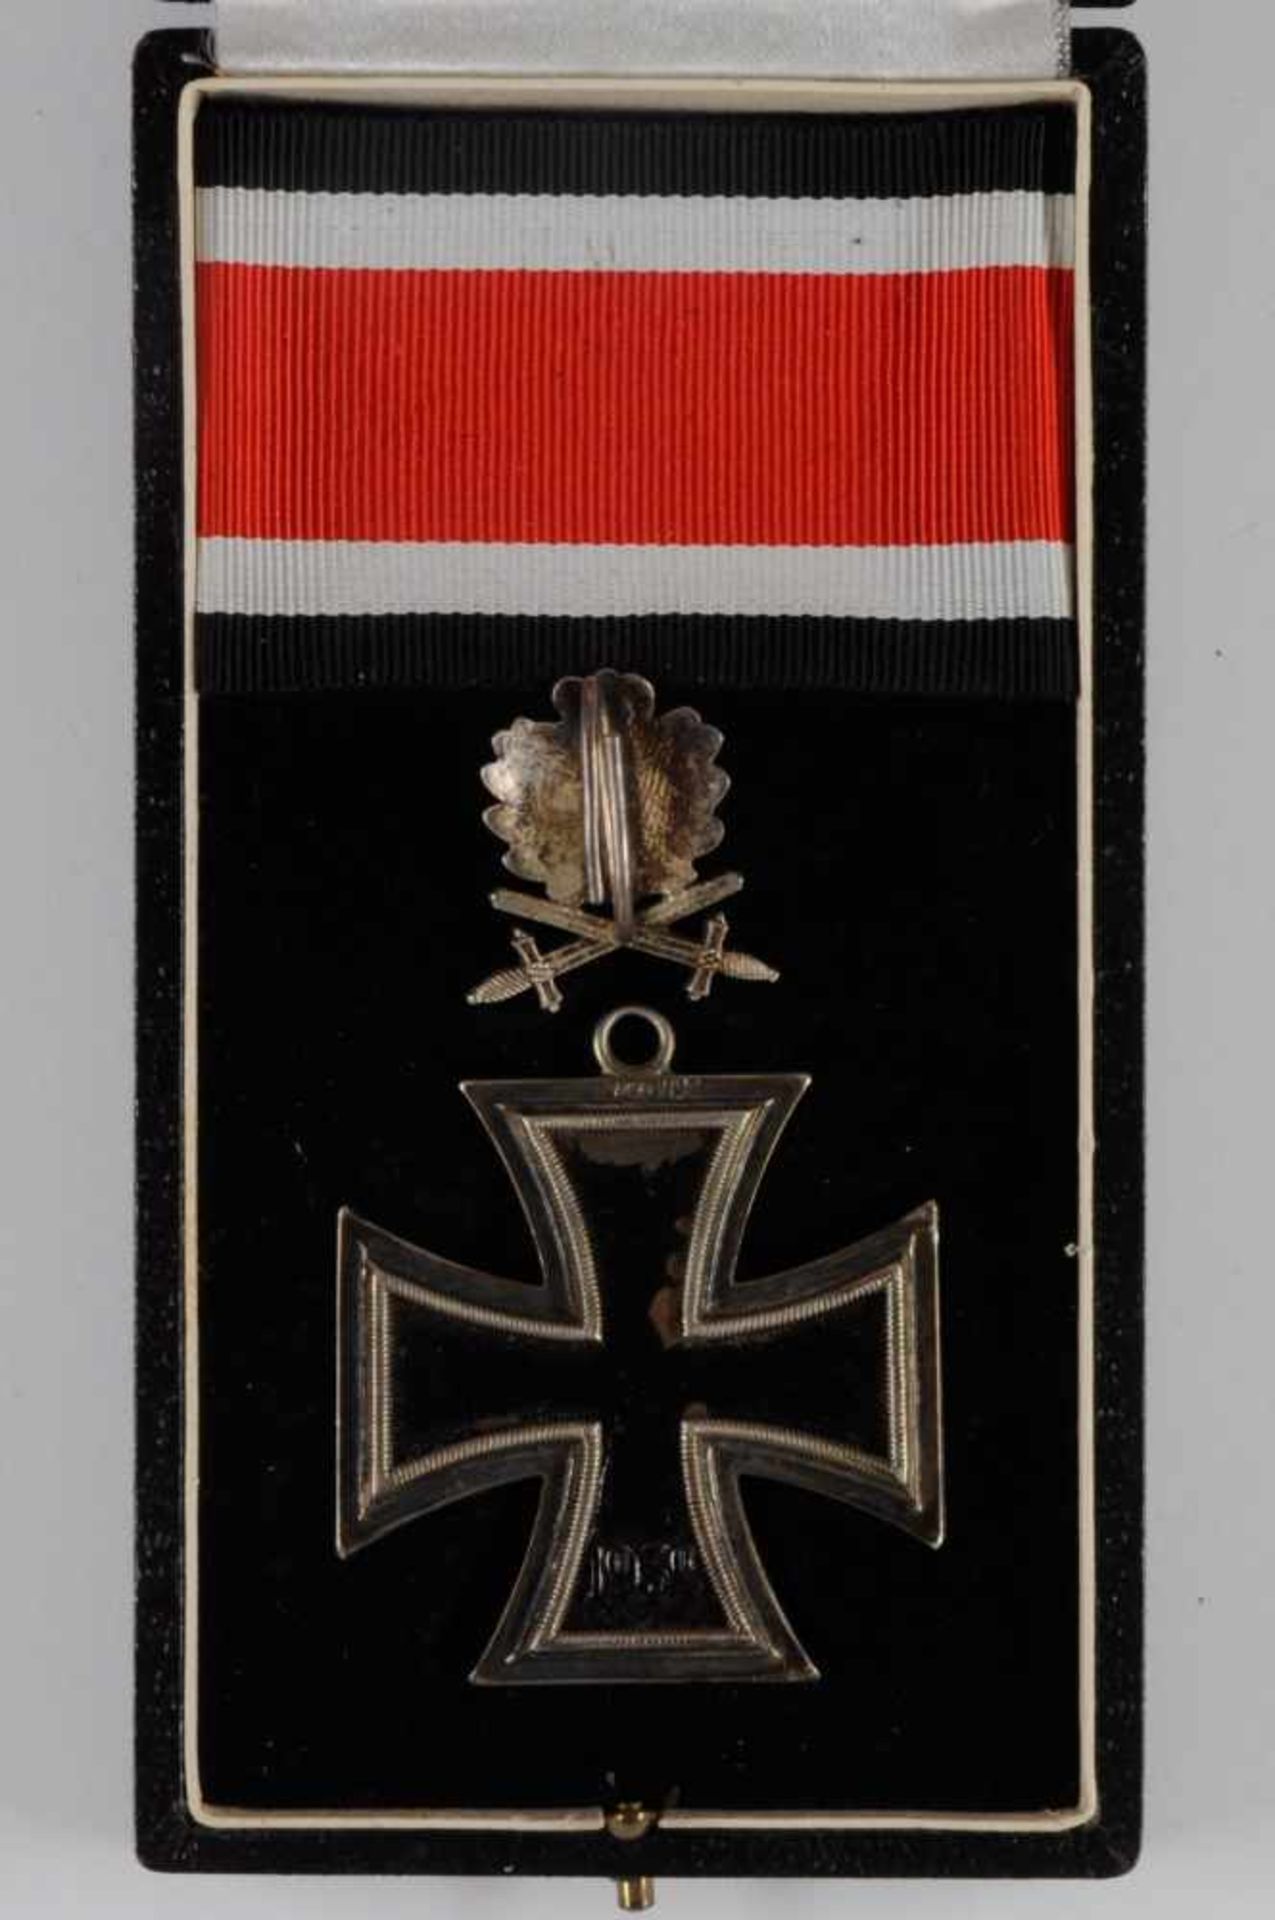 Allg. militärische Auszeichnungen 2. Weltkrieg Eichenlaub mit Schwertern zum Ritterkreuz des - Bild 7 aus 8